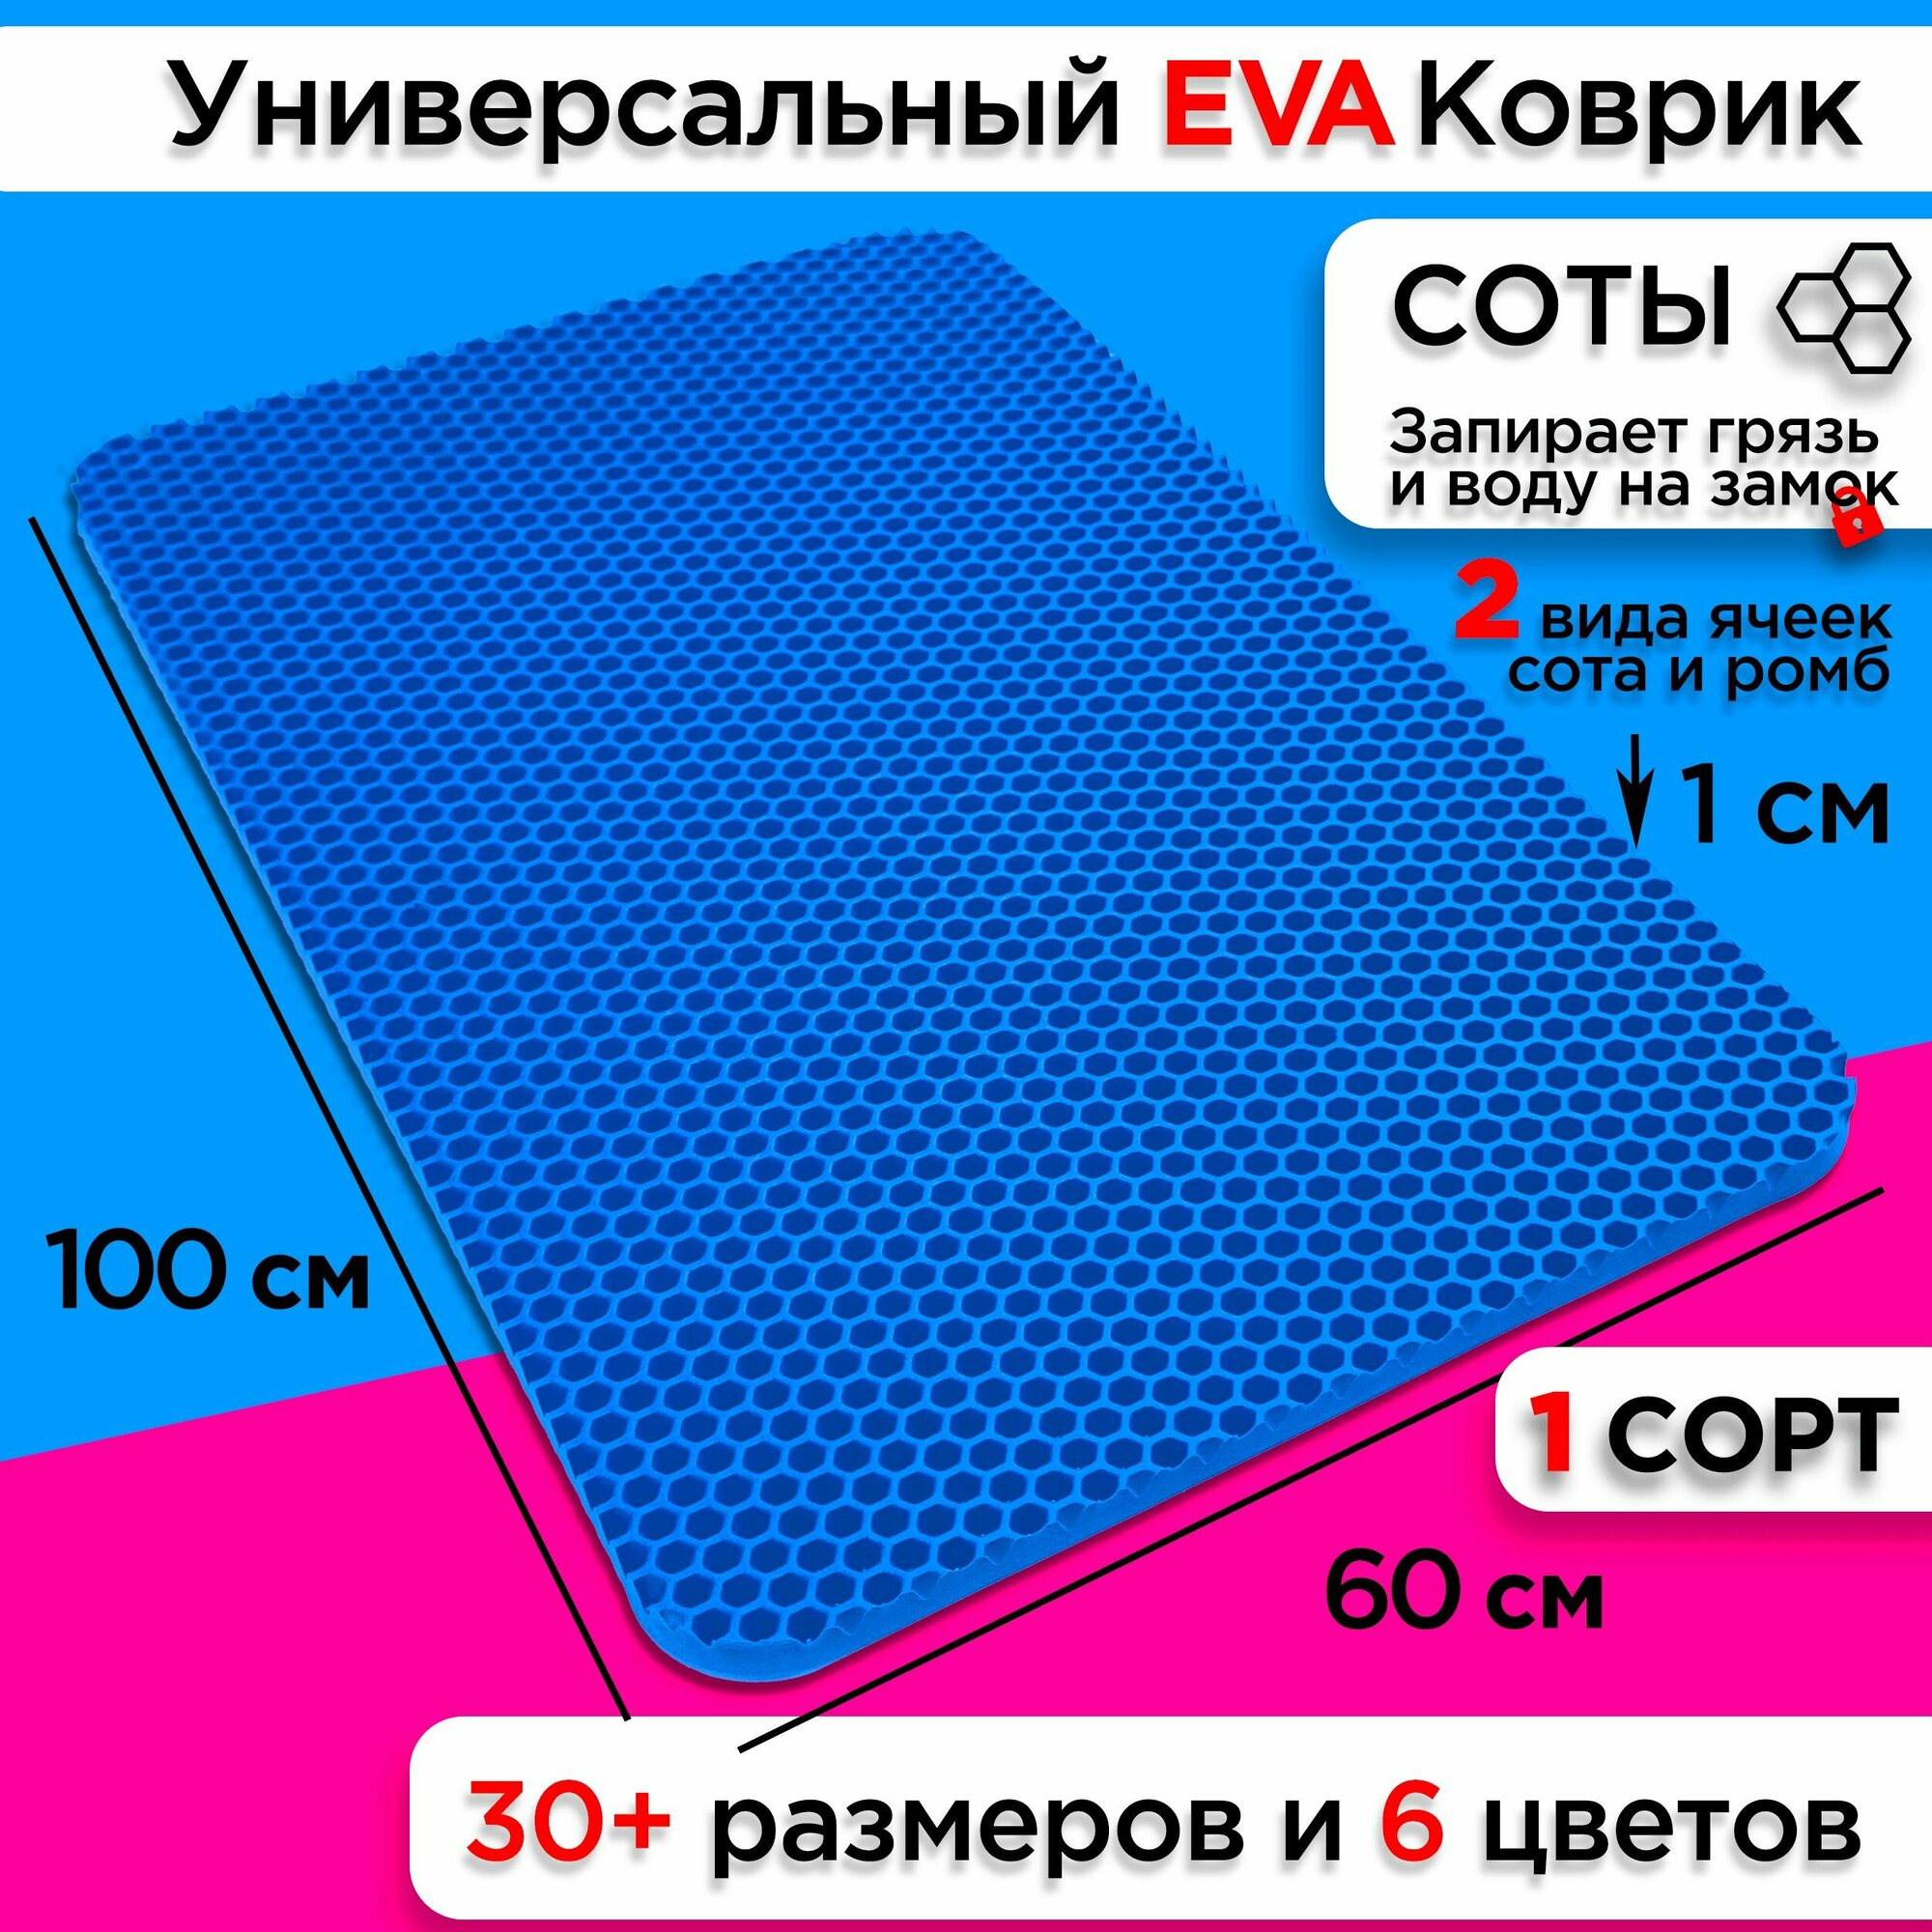 Коврик придверный EVA 100 х 60 см грязезащитный входной в прихожую износостойкий ковер на пол под обувь на кухню в шкаф